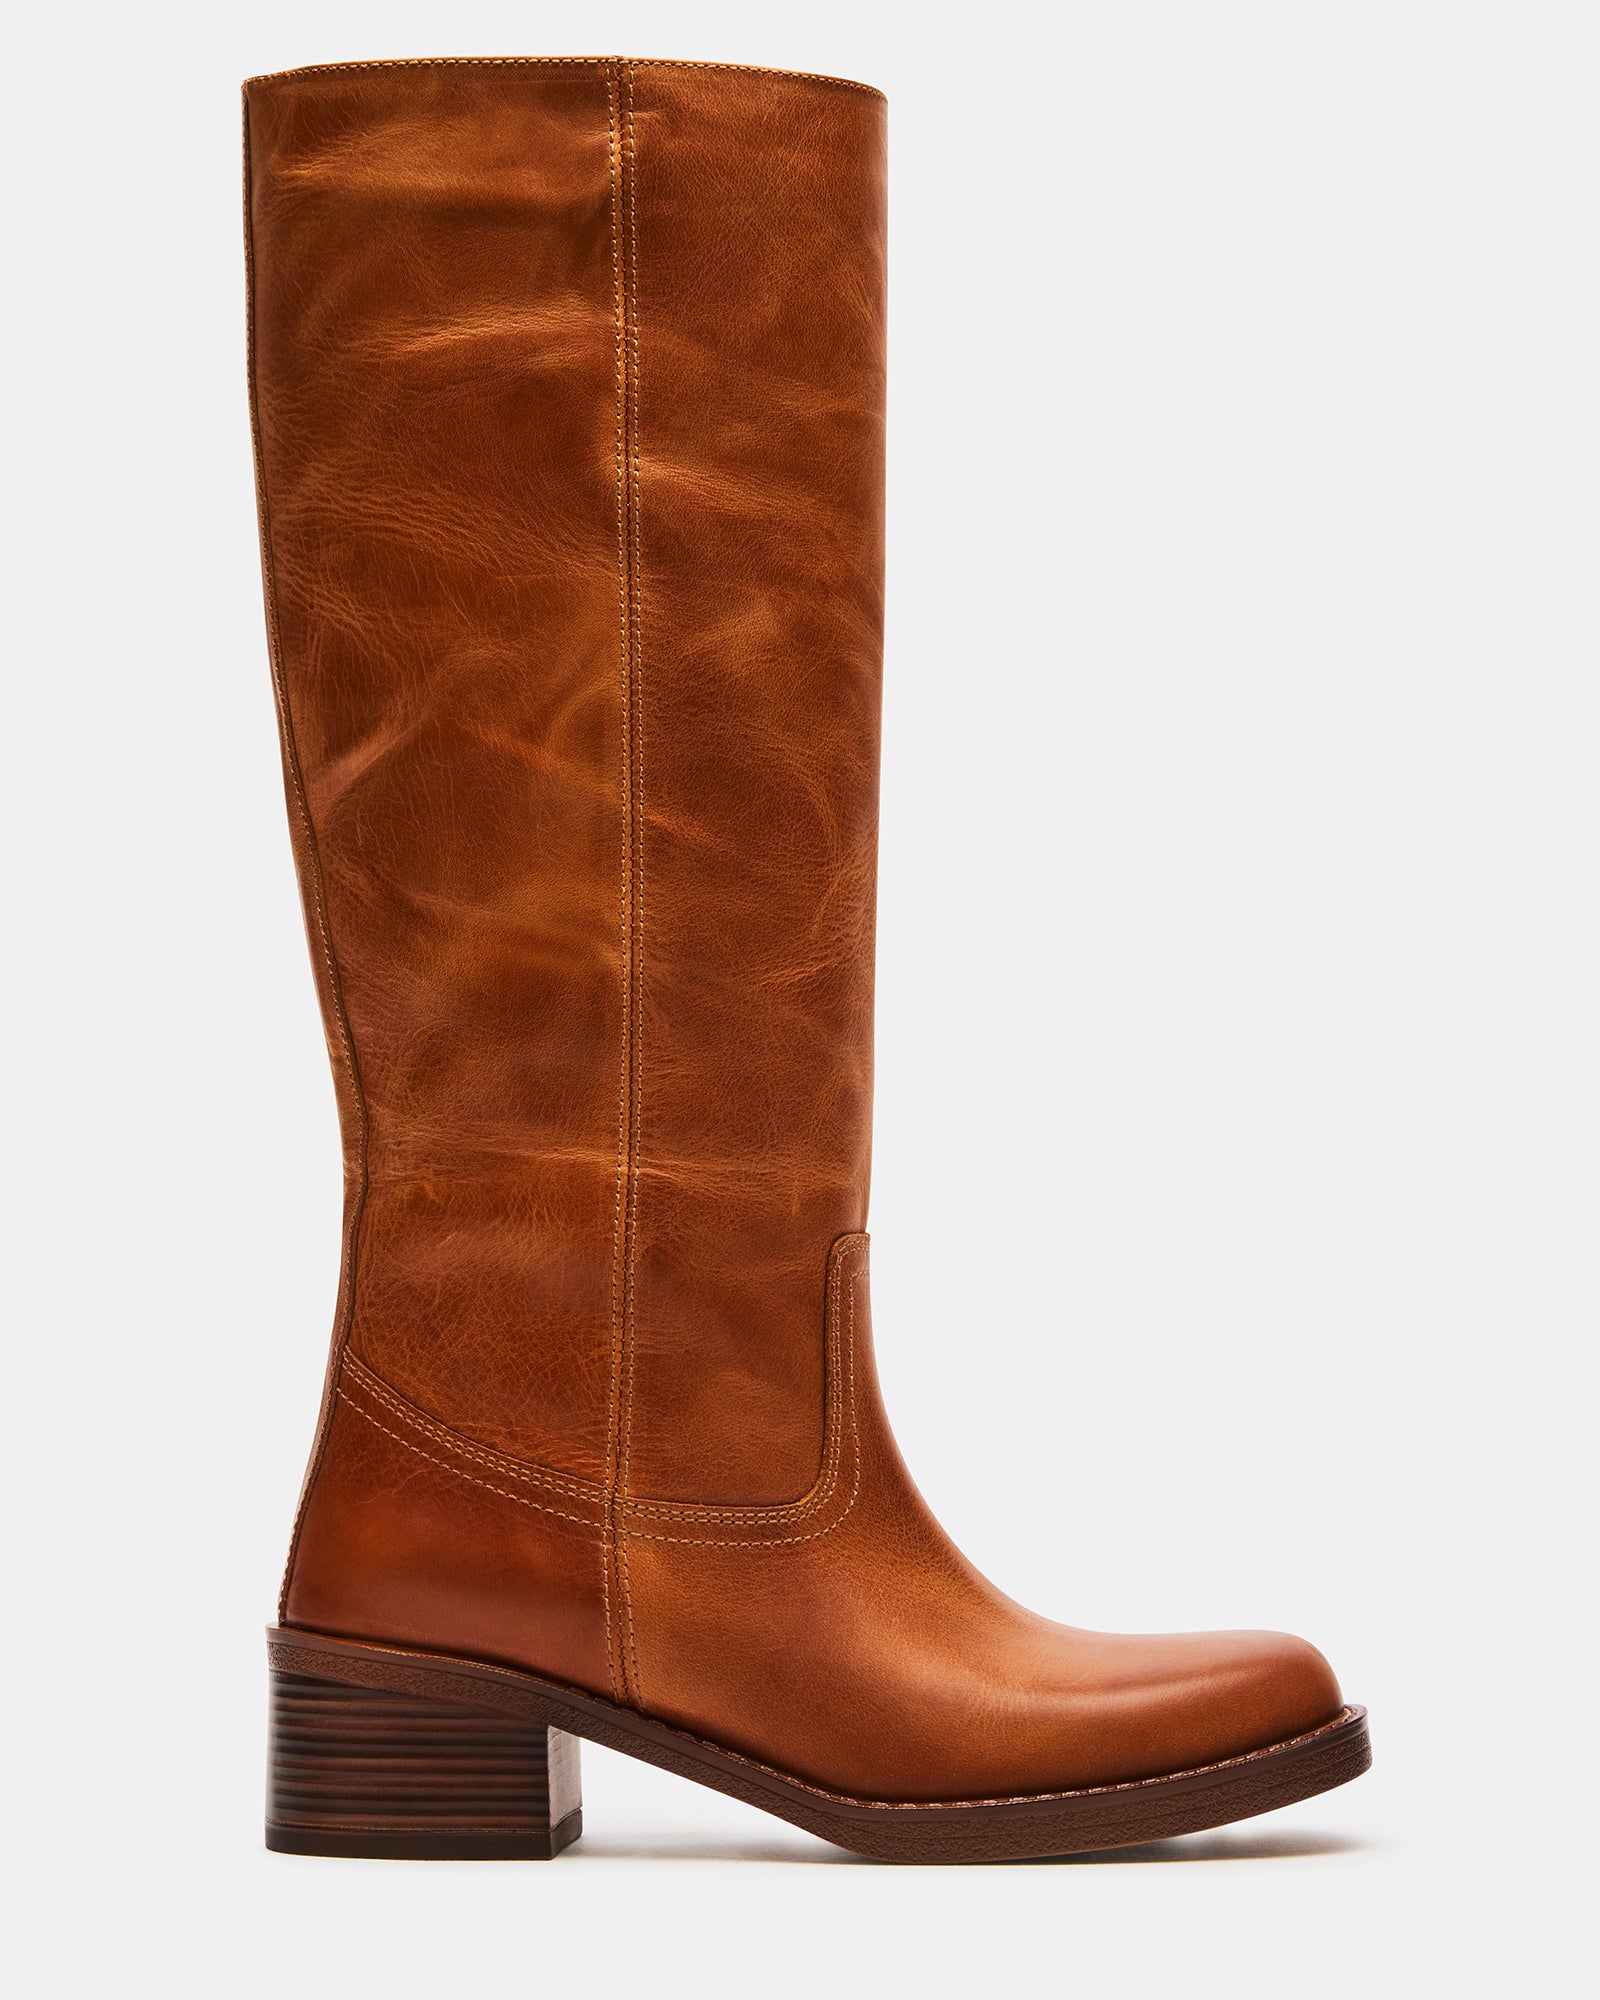 NENA Cognac Leather Knee High Boot | Women's Boots – Steve Madden